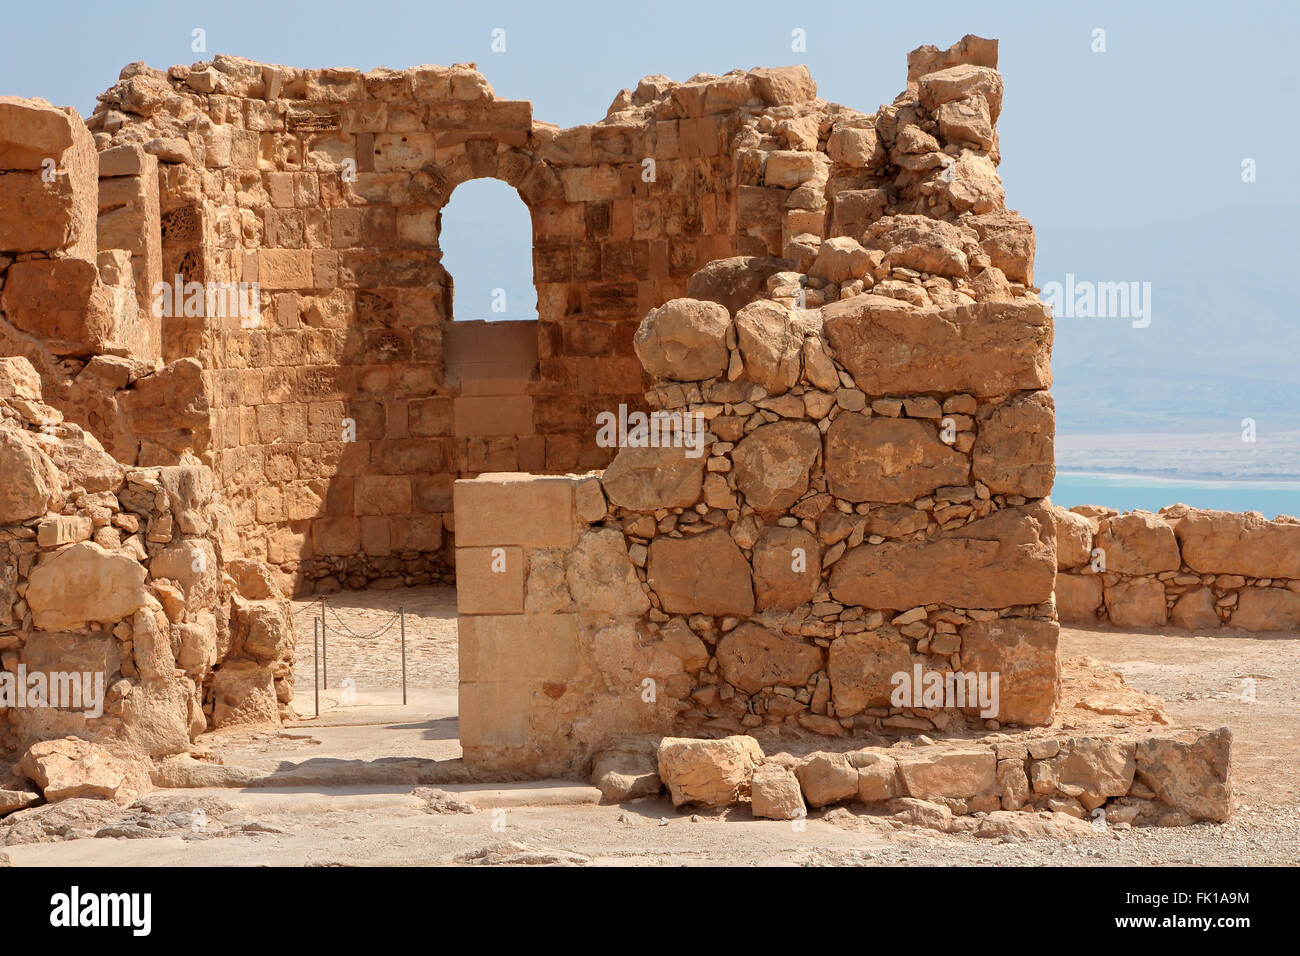 Masada i resti di una antica fortezza sul bordo orientale del deserto della Giudea, Israele Foto Stock